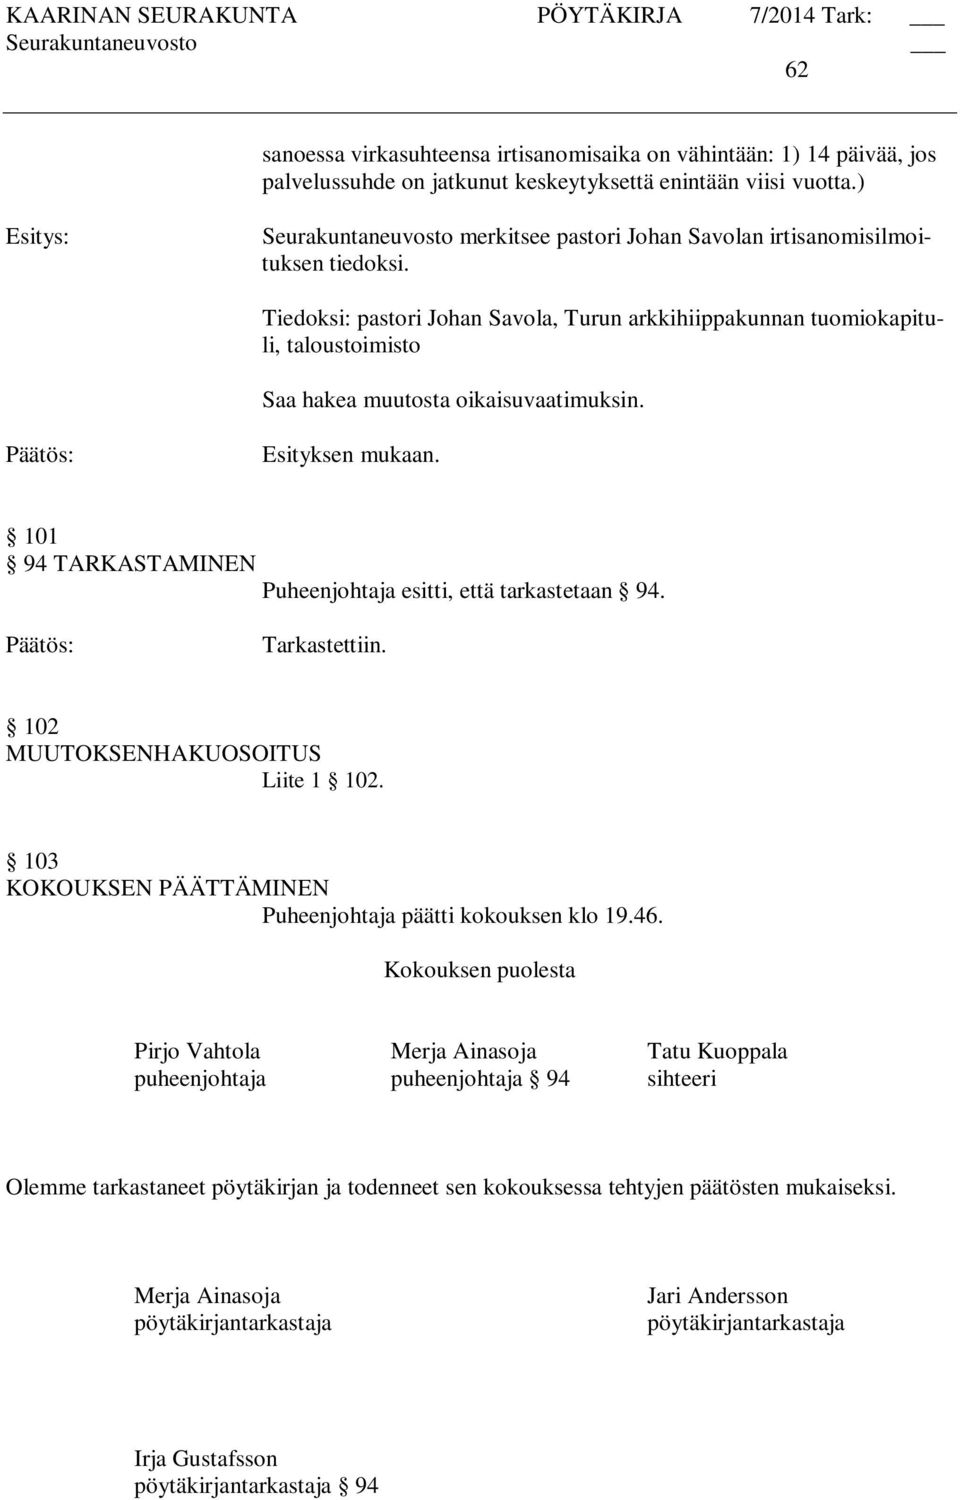 Tiedoksi: pastori Johan Savola, Turun arkkihiippakunnan tuomiokapituli, taloustoimisto 101 94 TARKASTAMINEN Puheenjohtaja esitti, että tarkastetaan 94. Tarkastettiin.